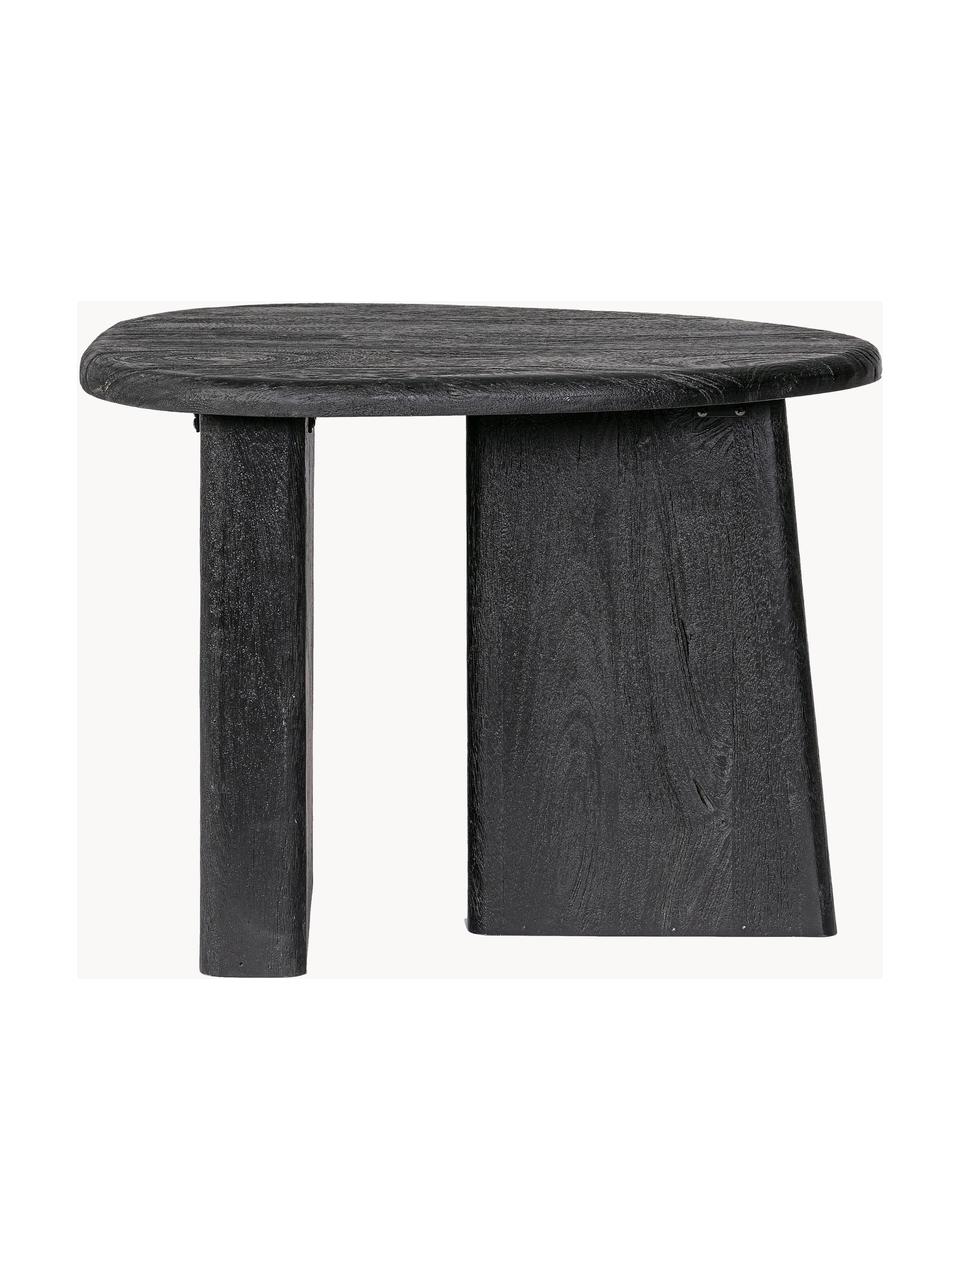 Oválny konferenčný stolík z mangového dreva Zacetas, Mangové drevo, Mangové drevo, čierne lakované, Š 60 x H 45 cm